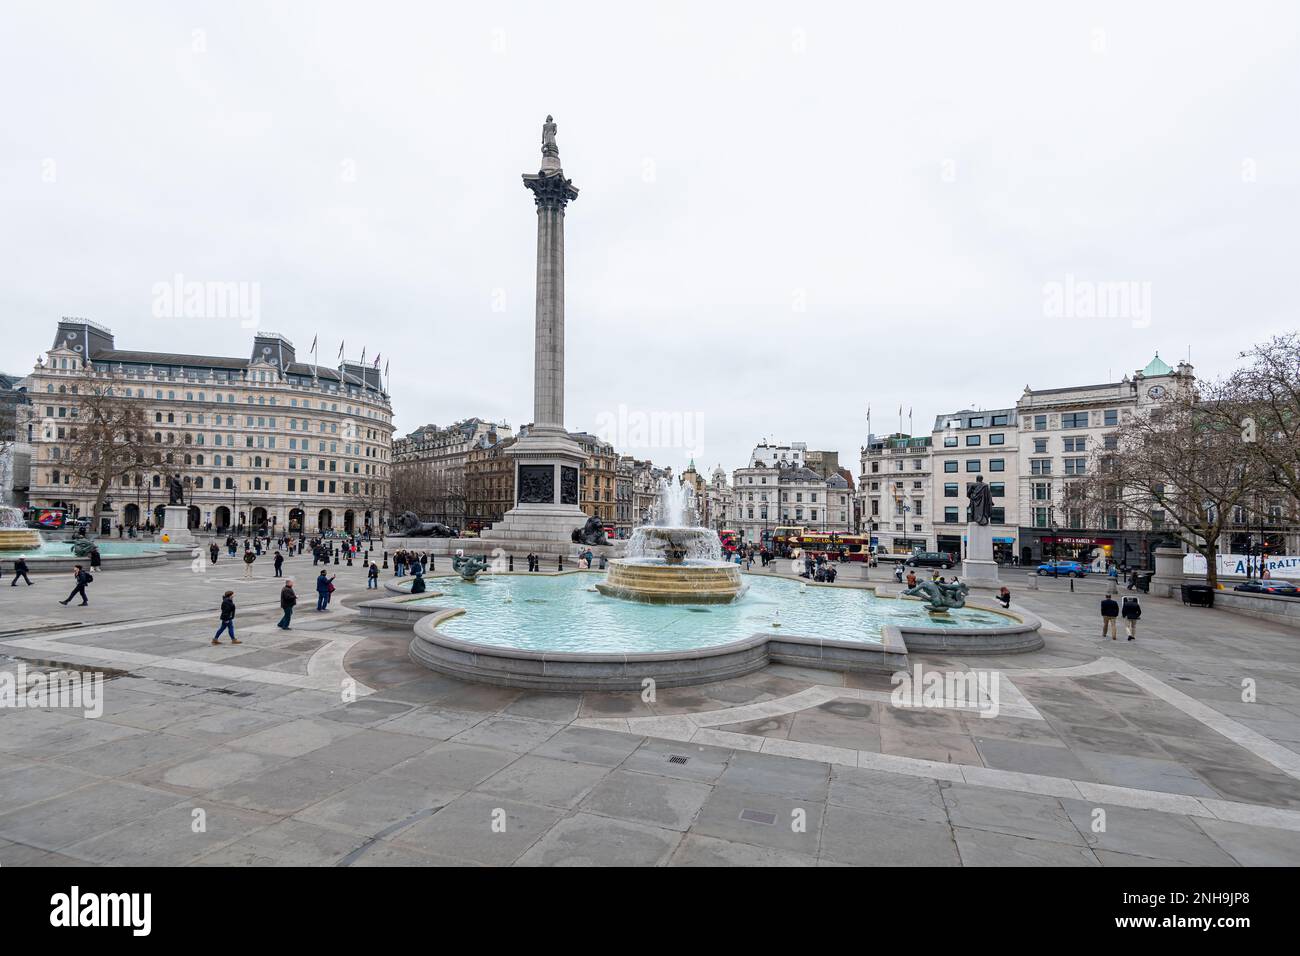 Der Trafalgar Square ist ein öffentlicher Raum und eine Touristenattraktion im Zentrum von London. Landschaftsaufnahmen mit Schwenkobjektiv für vertikale Aufnahmen Stockfoto